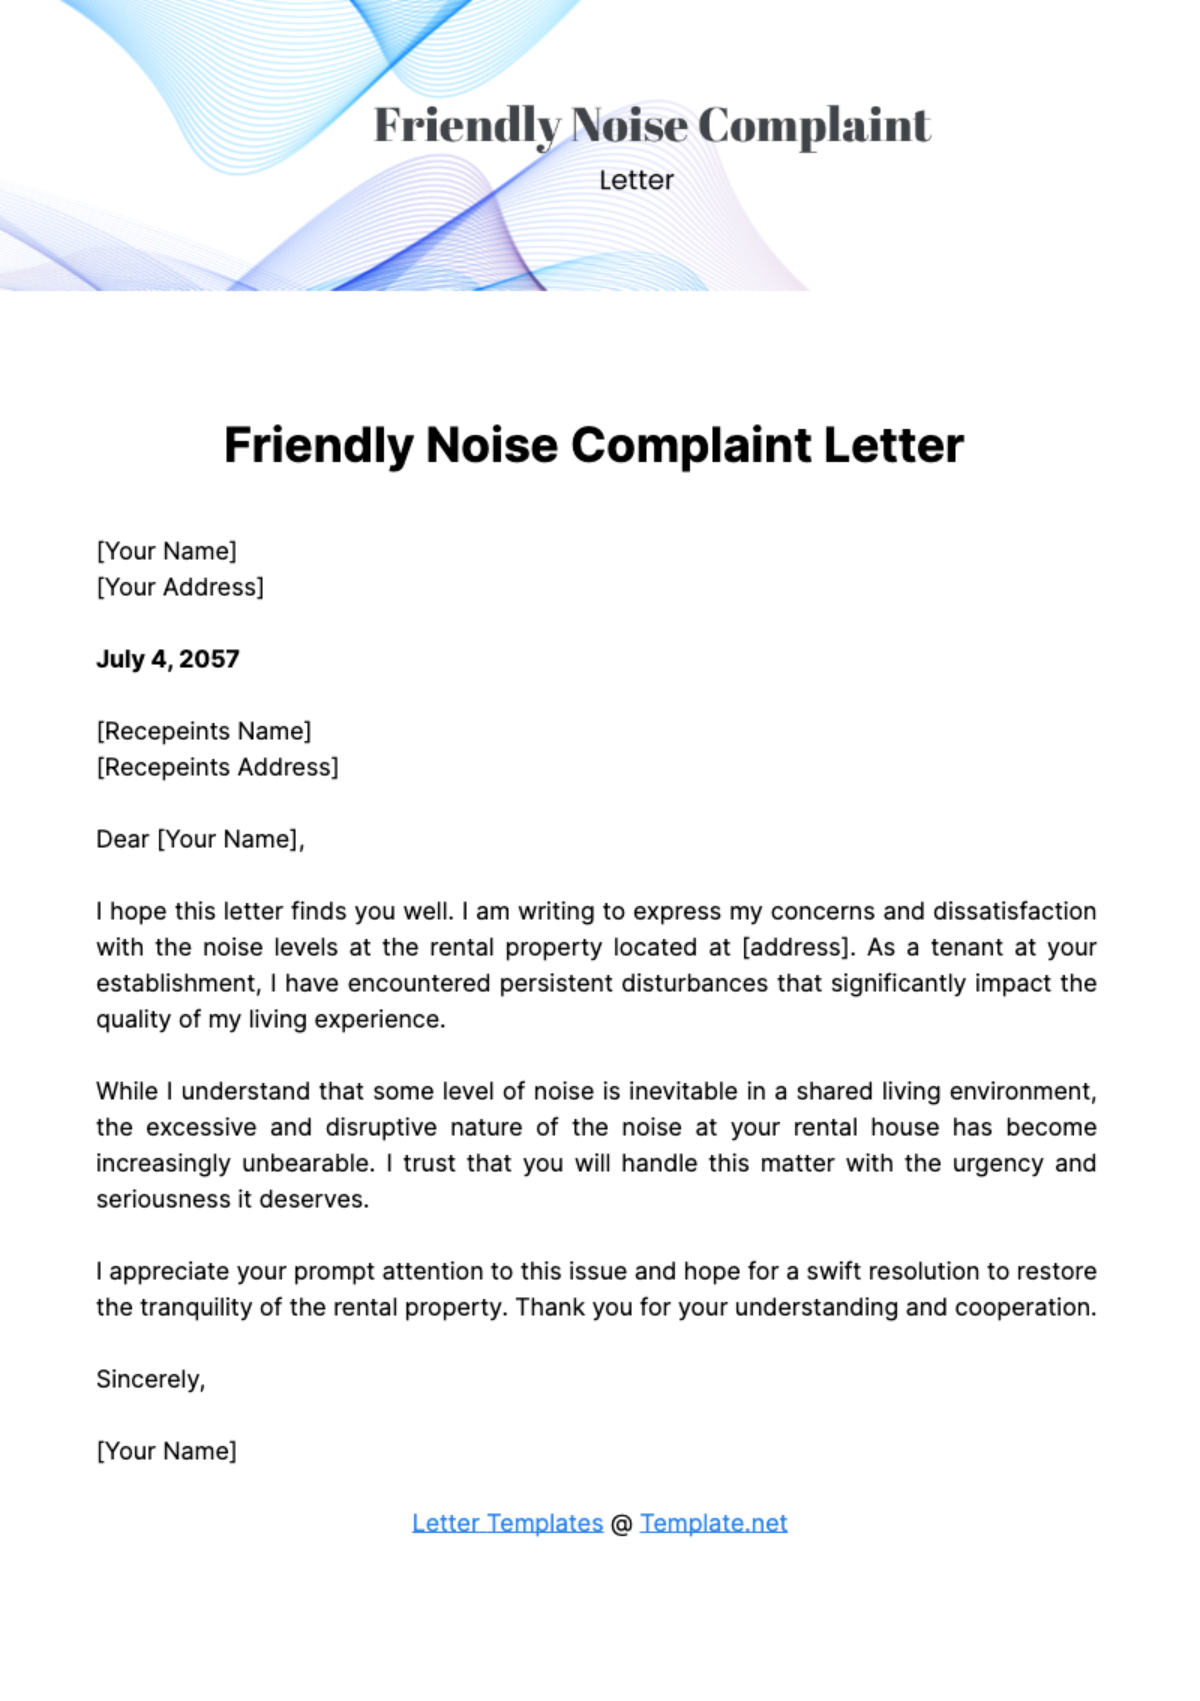 Free Friendly Noise Complaint Letter Template